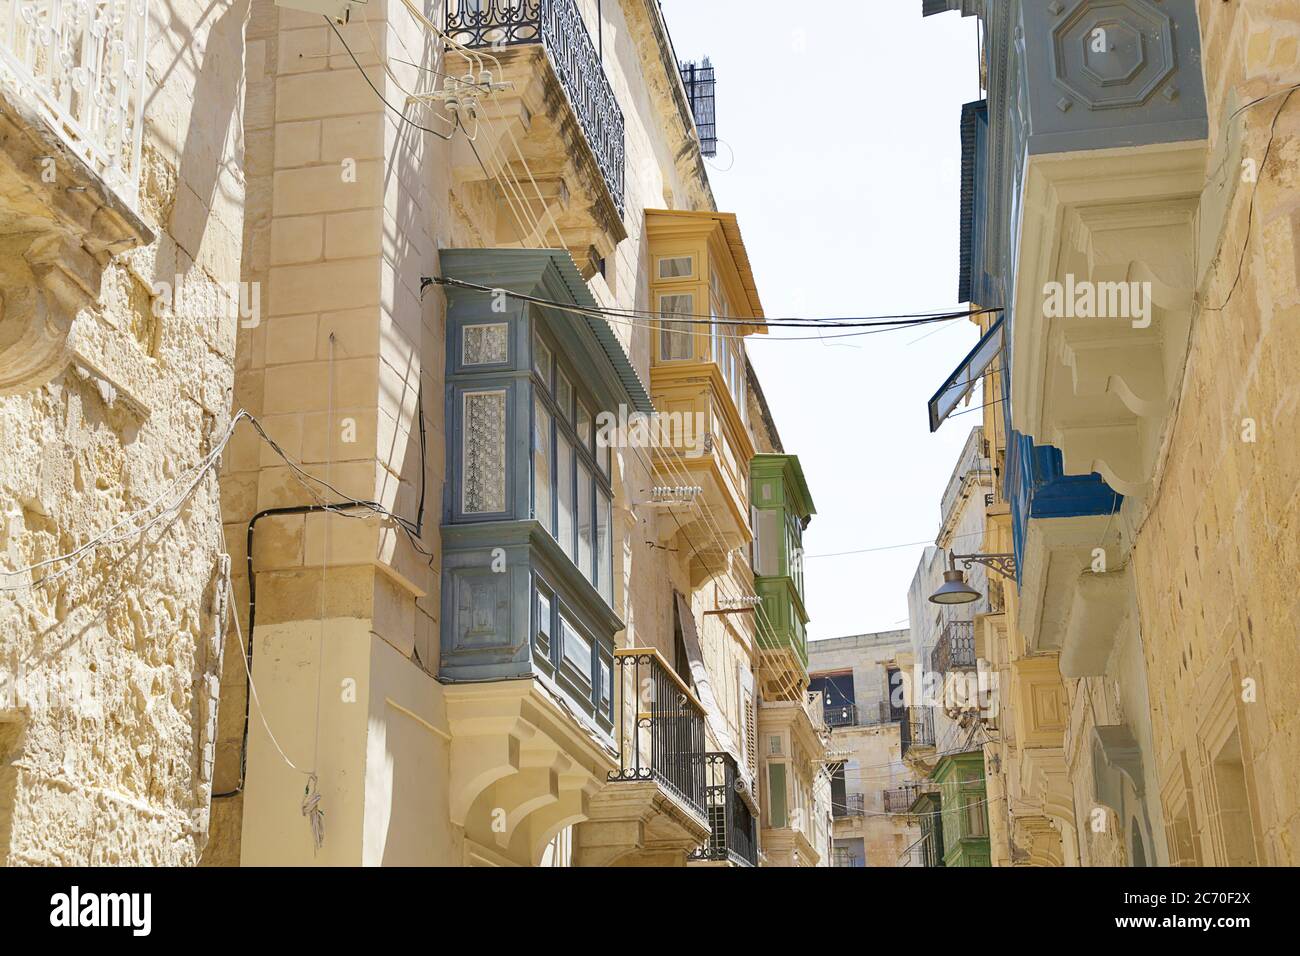 Strada con edifici antichi, decorata con colorati balconi maltesi, Birgu (Vittoriosa), Malta Foto Stock